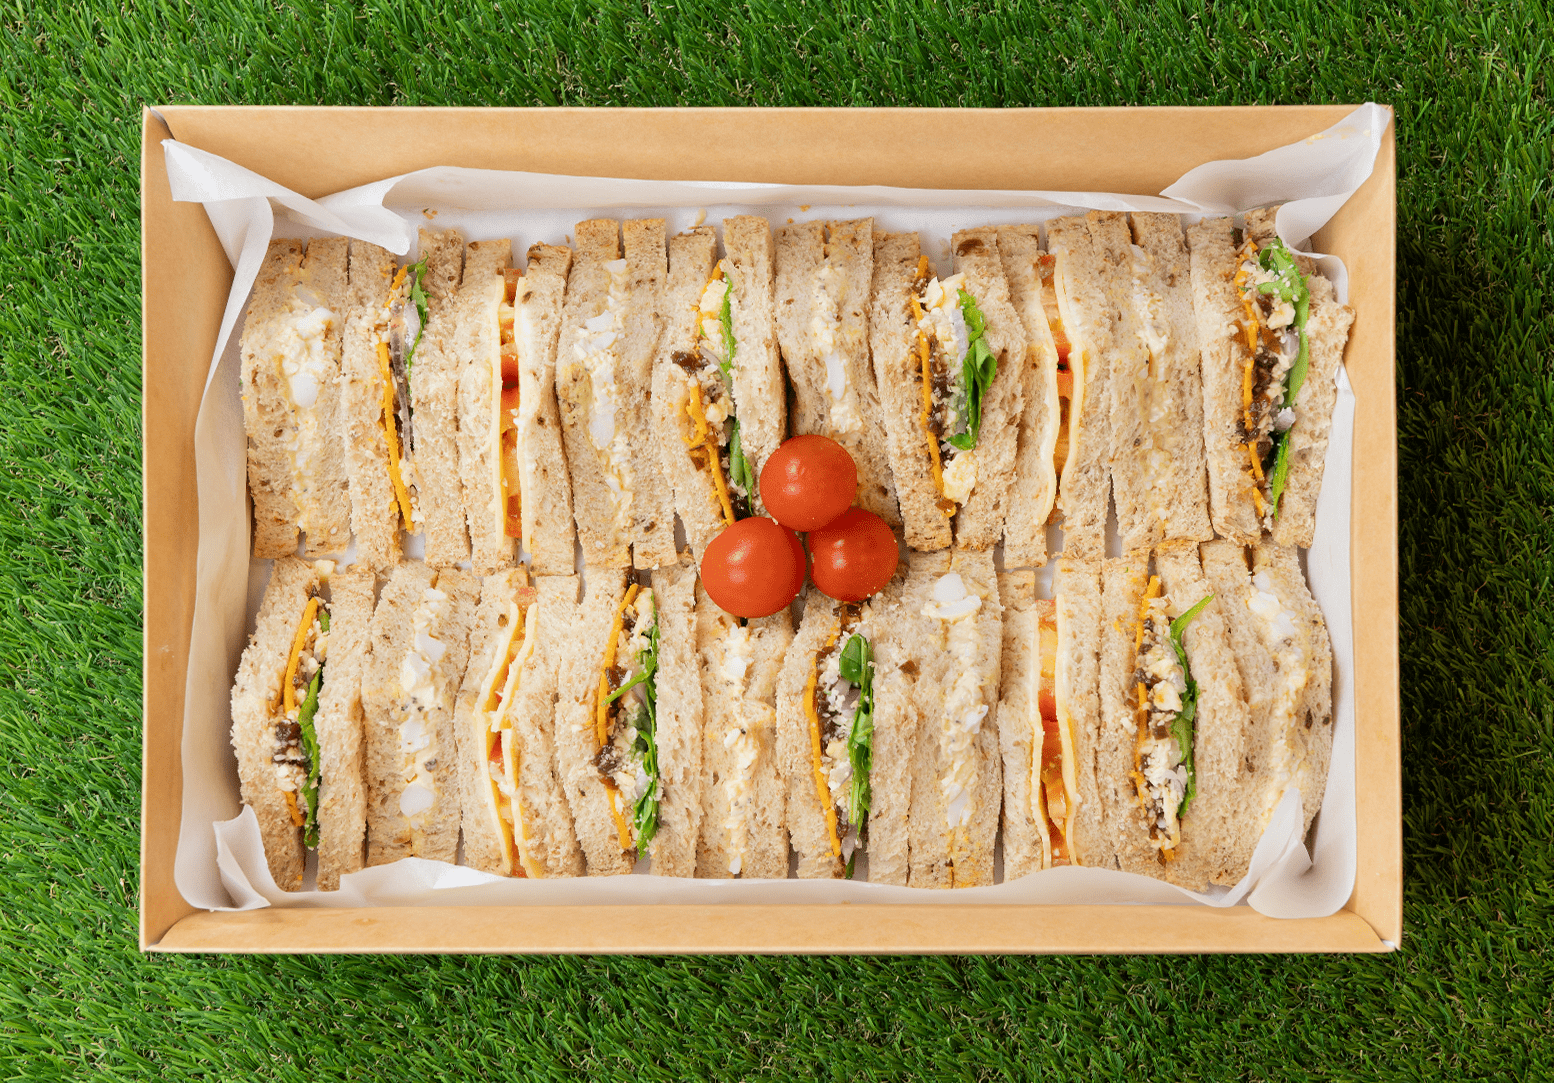 Veggie Sandwiches